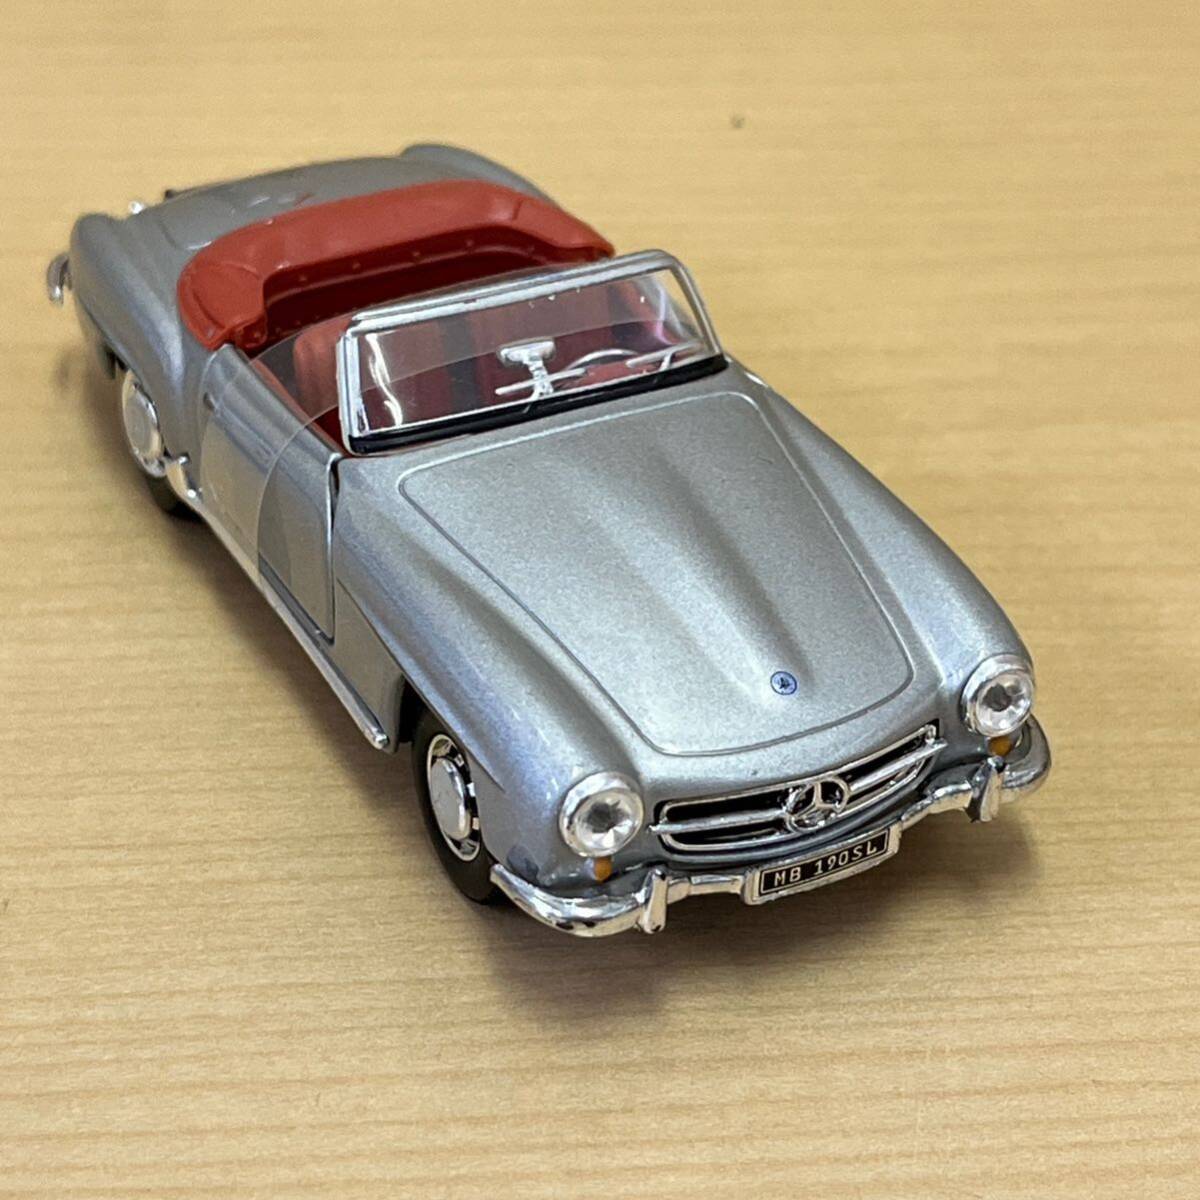 [TS0421]18 миникар Mercedes Benz MB190SL серебряный цвет открытый машина высококлассный машина коллекция античный машина 